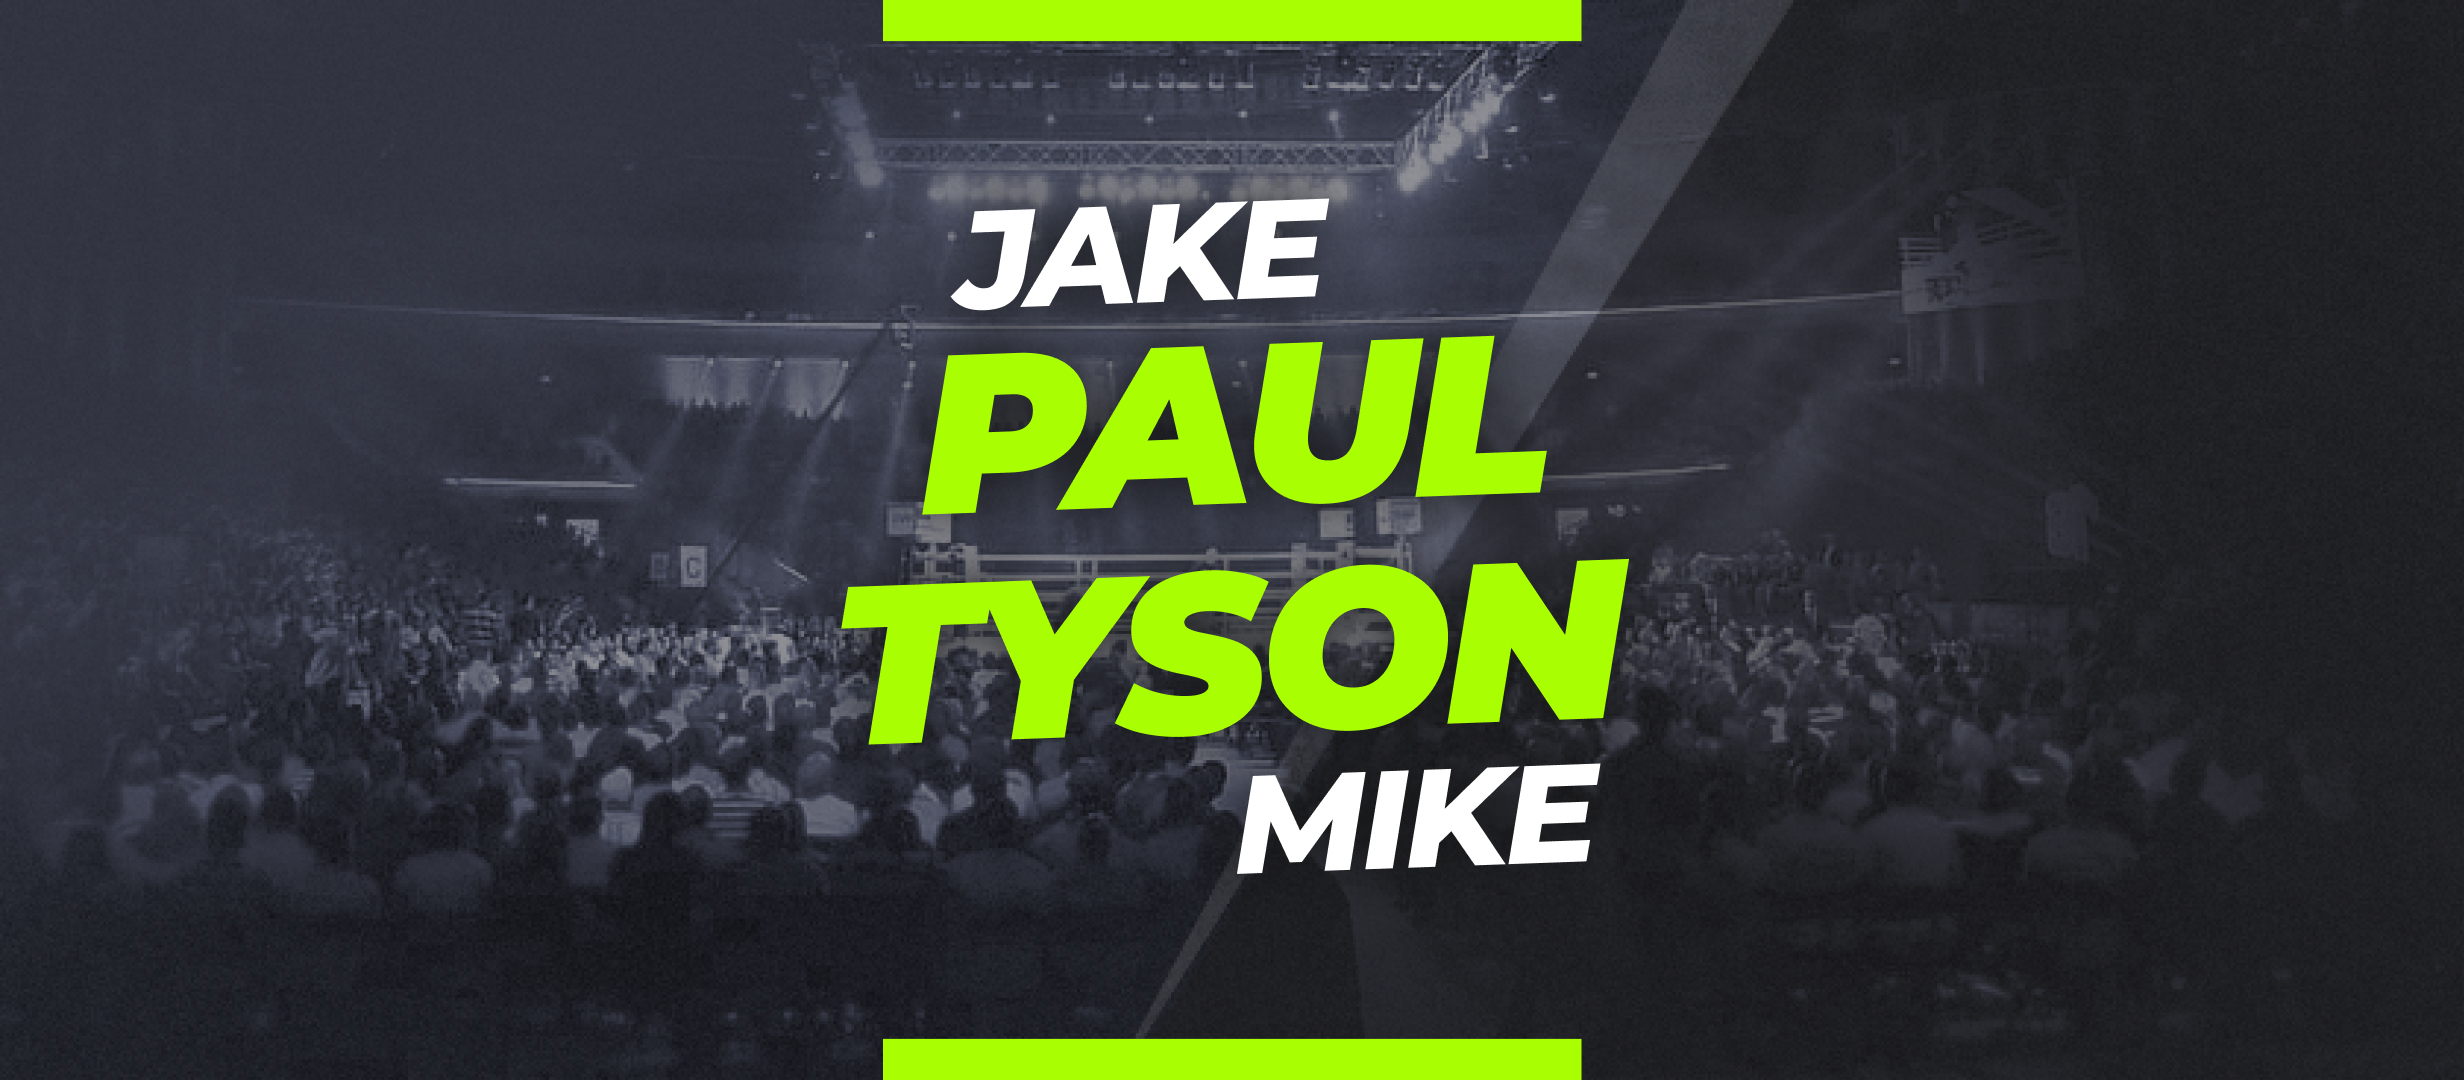 Apuestas Tyson vs Jake Paul: cuotas y pronóstico